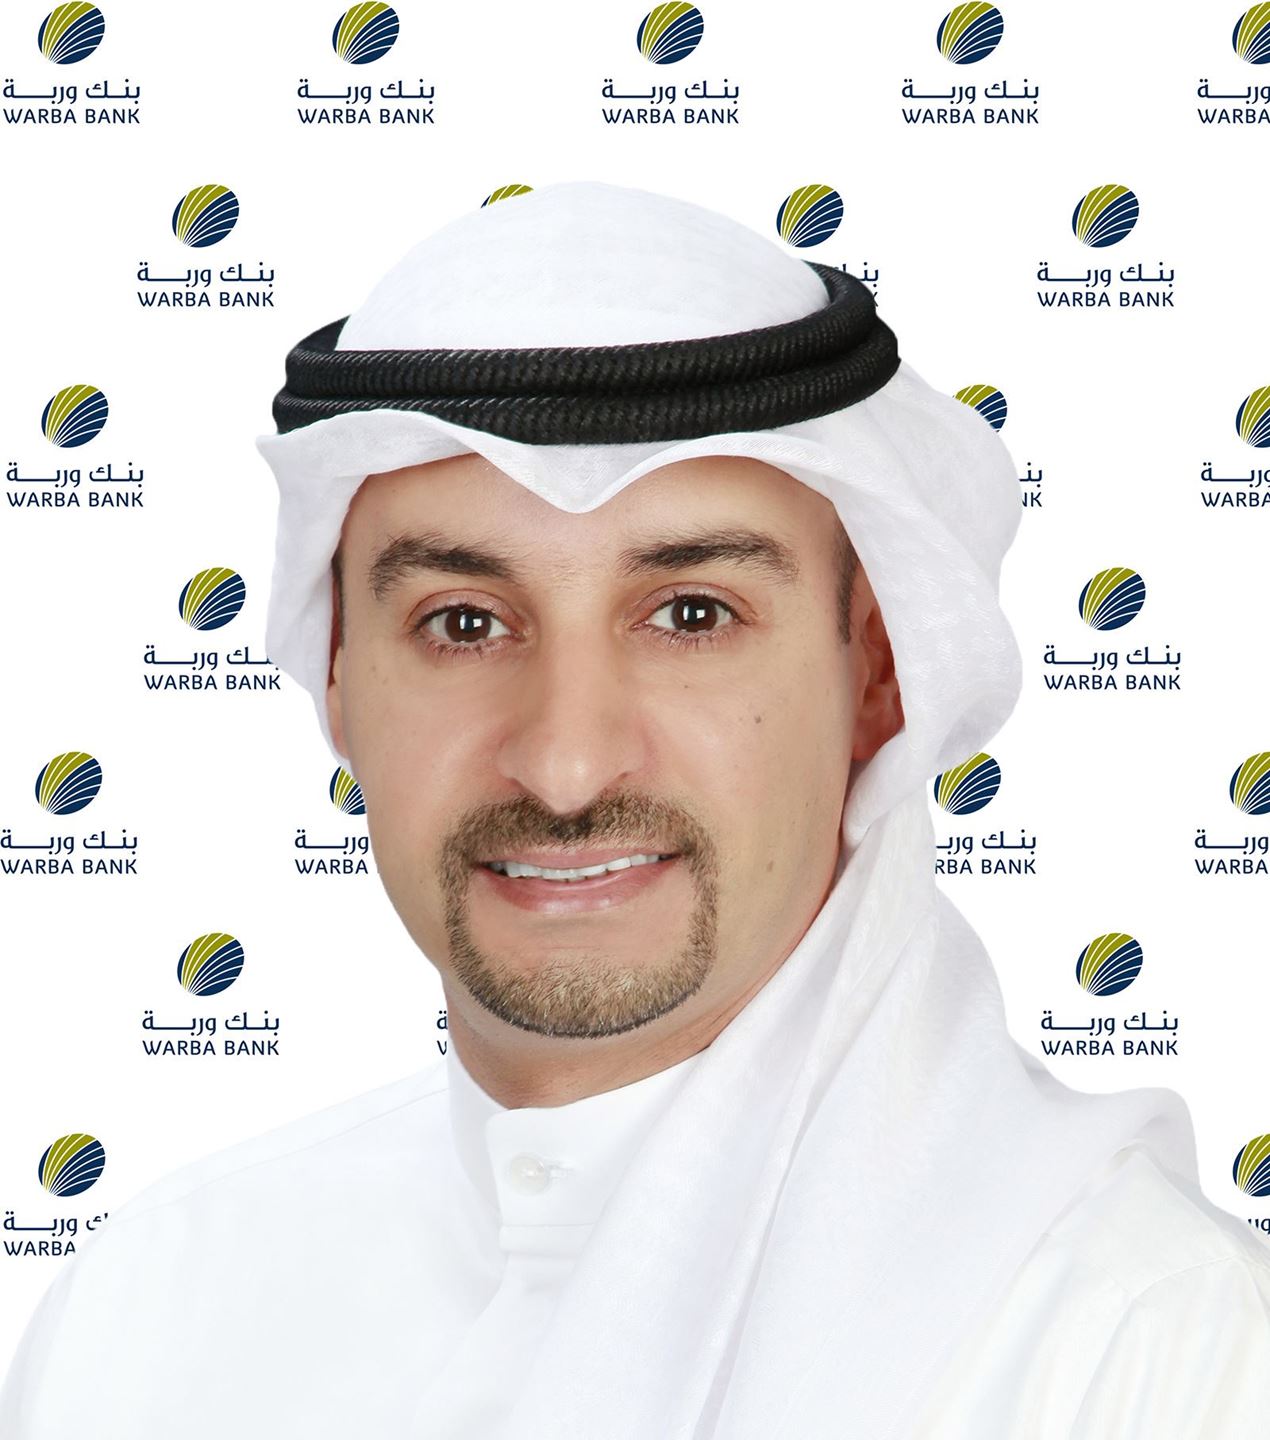 السيد أيمن سالم المطيري – مدير أول، إدارة الإتصال المؤسسي، مجموعة التخطيط الإستراتيجي – بنك وربة